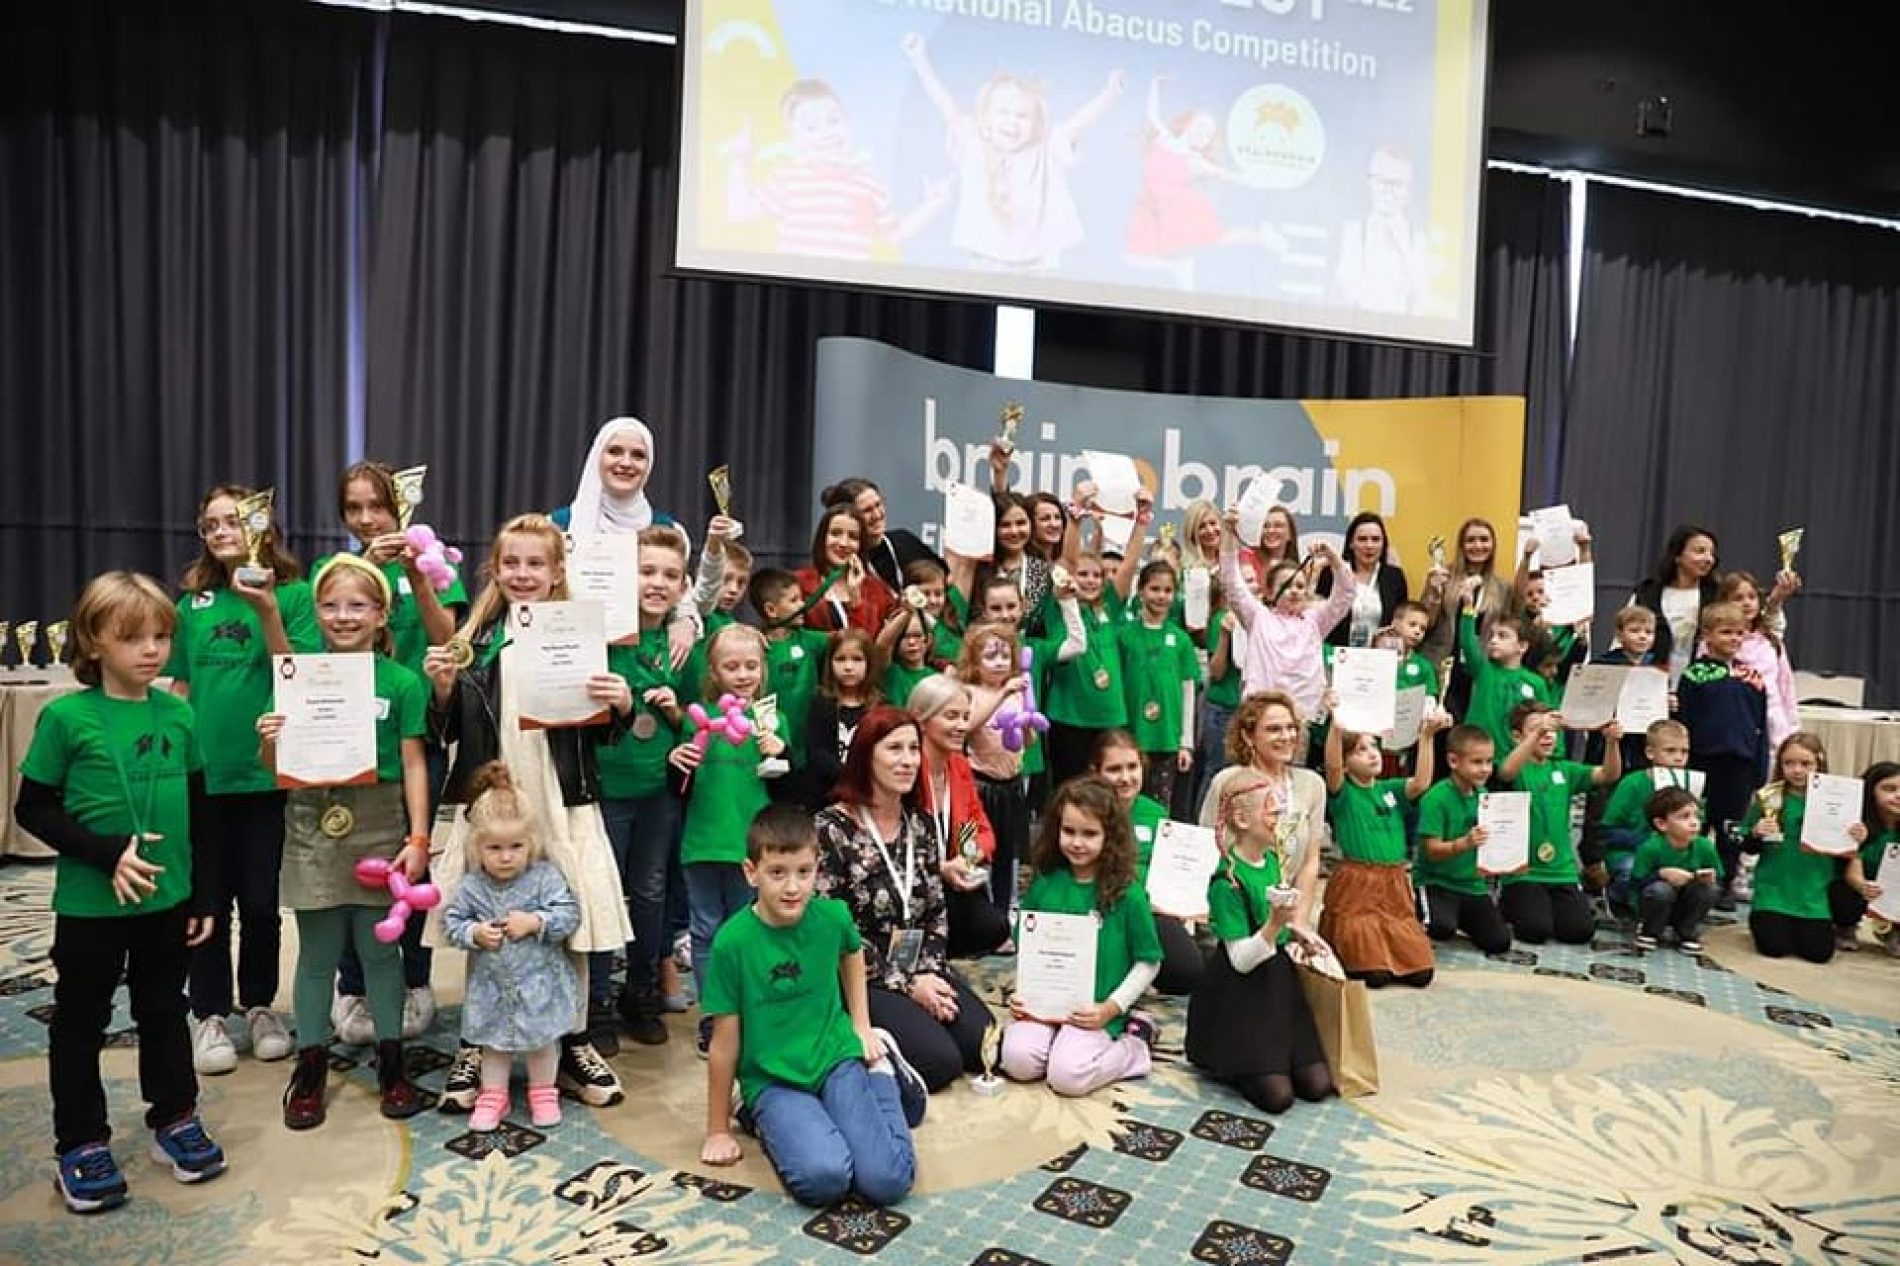 Svjetsko ‘Brainobrain’ takmičenje – bosanska djeca s 4 šampionska trofeja, 10 zlatnih i 14 srebrenih medalja